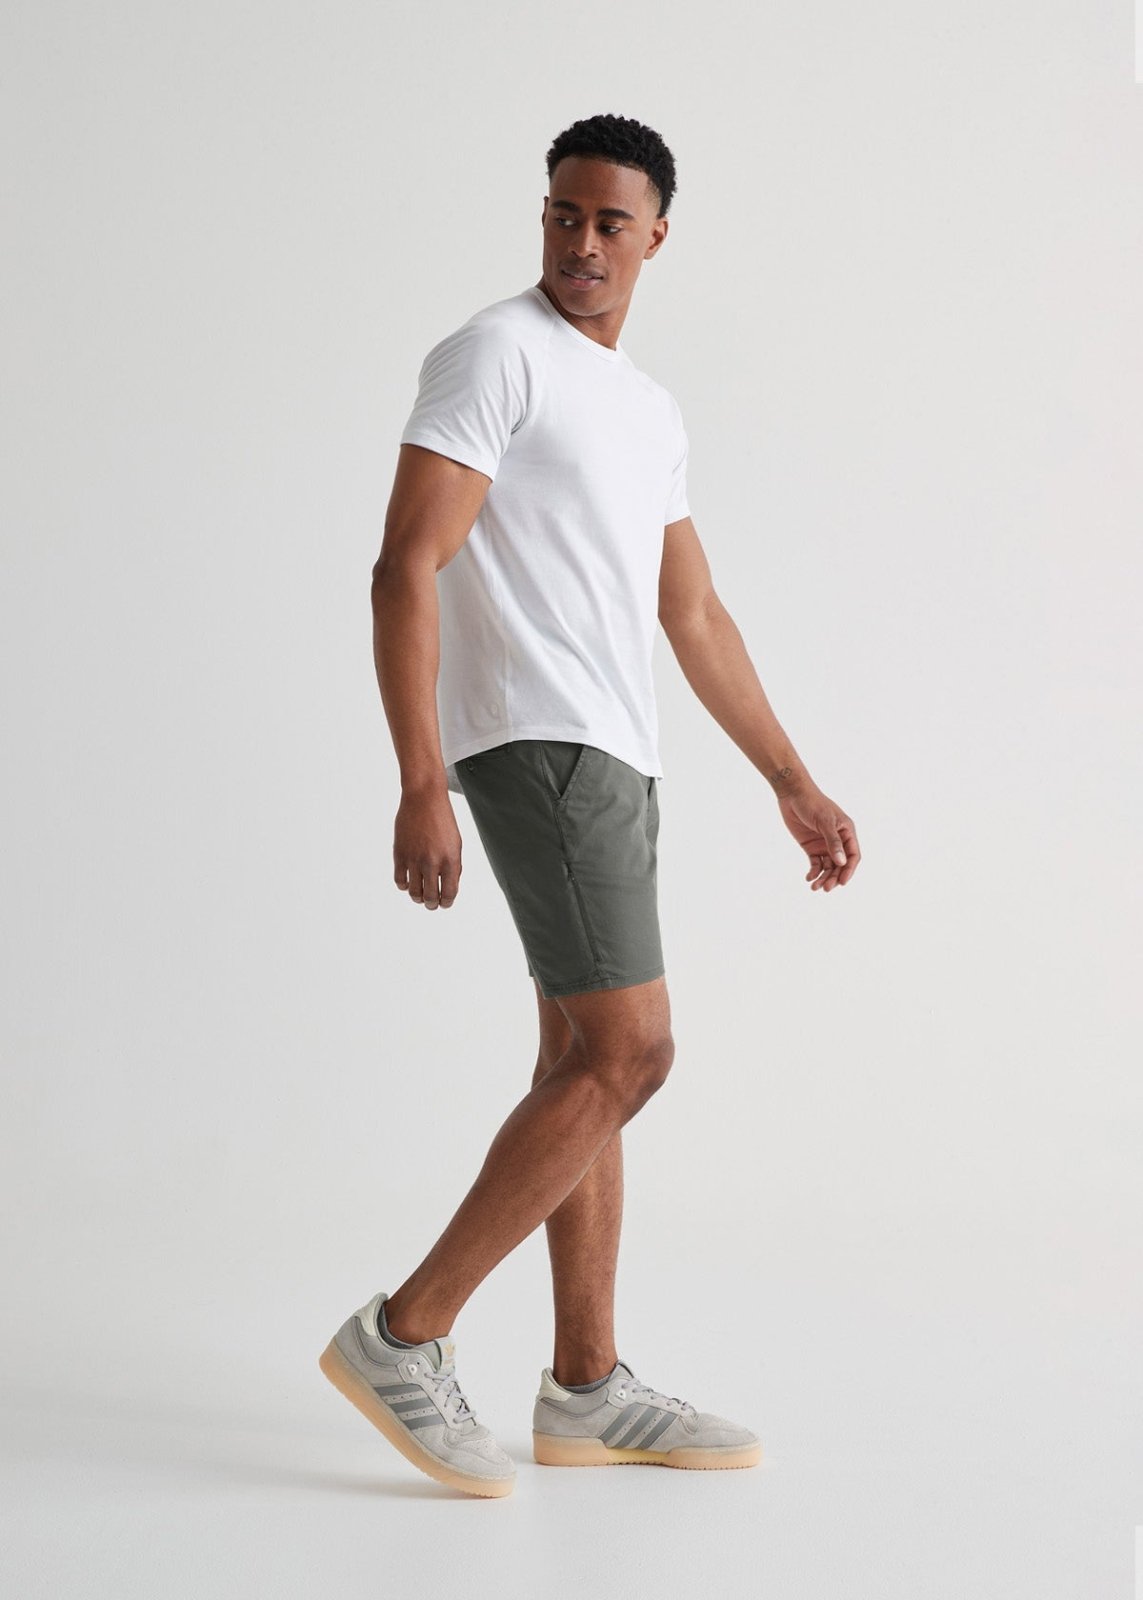 mens lightweight light green-grey shorts full body